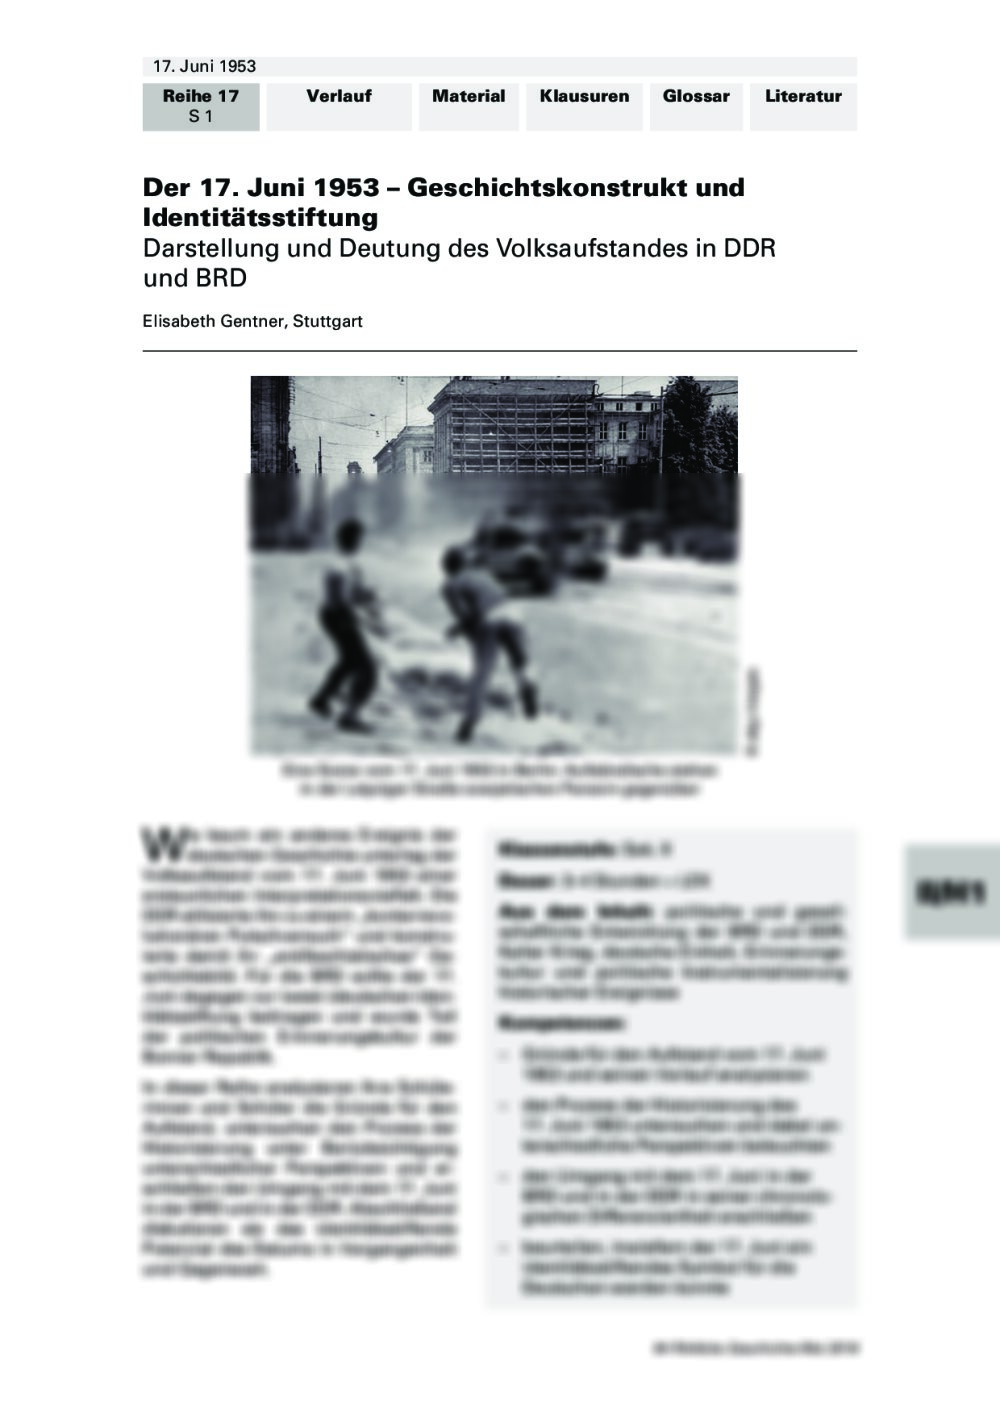 Darstellung und Deutung des Volksaufstandes in DDR und BRD - Seite 1